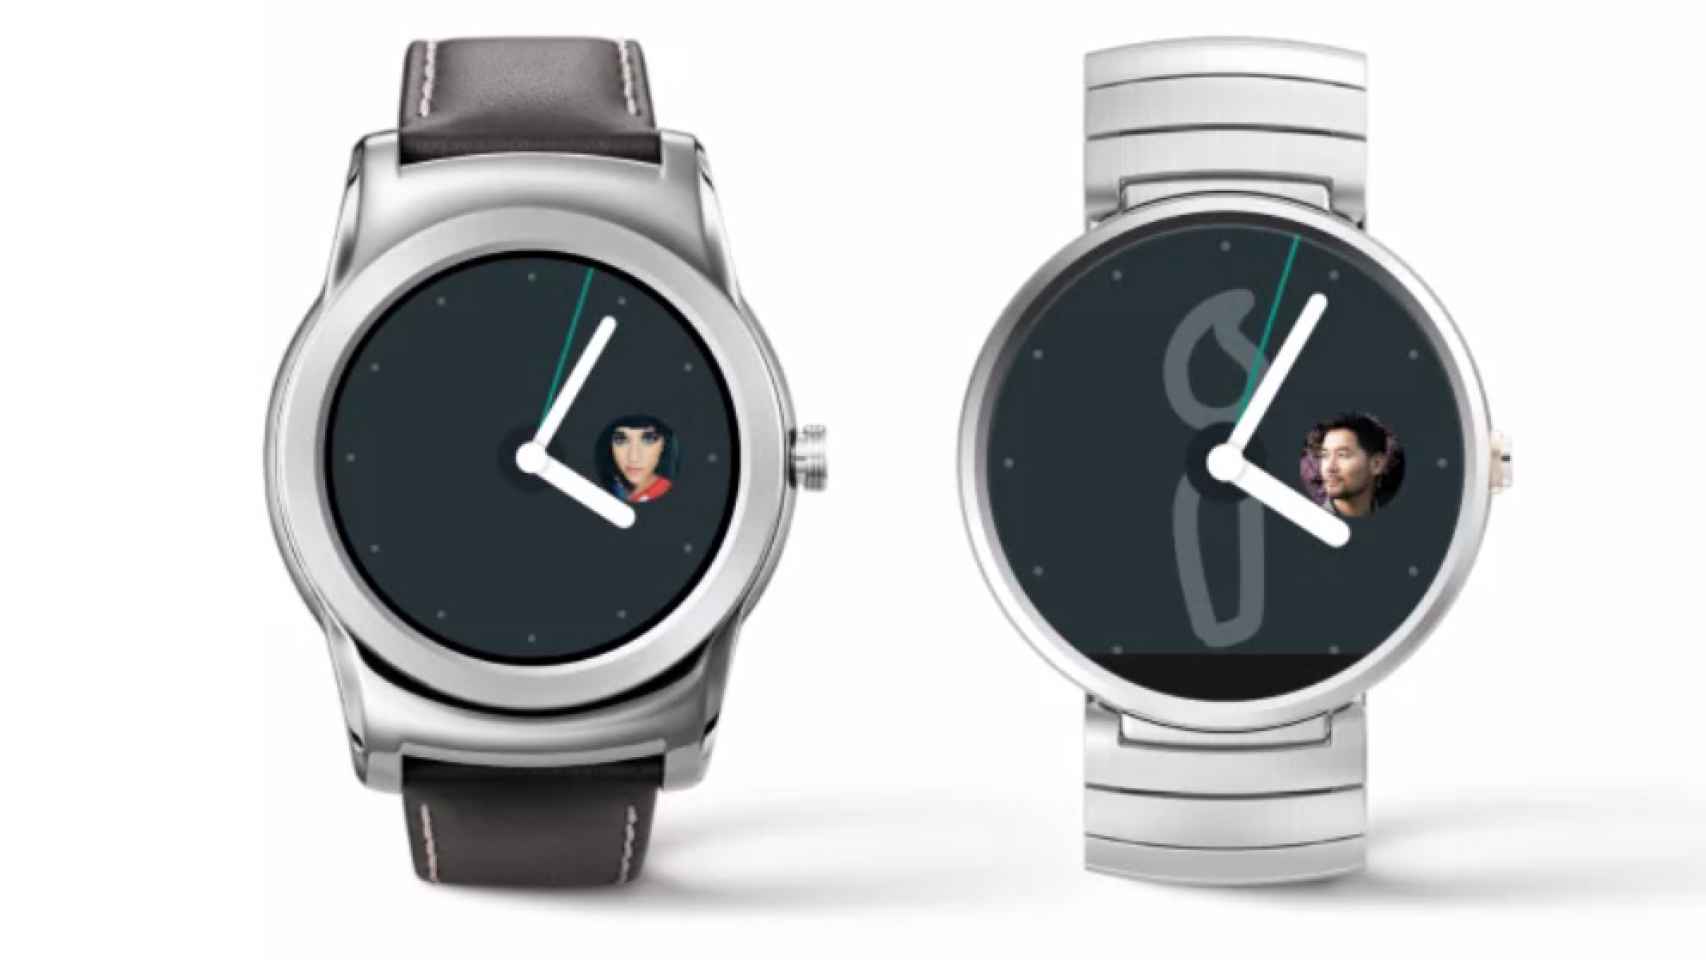 Android Wear 1.3 añade watchfaces interactivas, Google Translate y soporte WiFi para el LG G Watch R